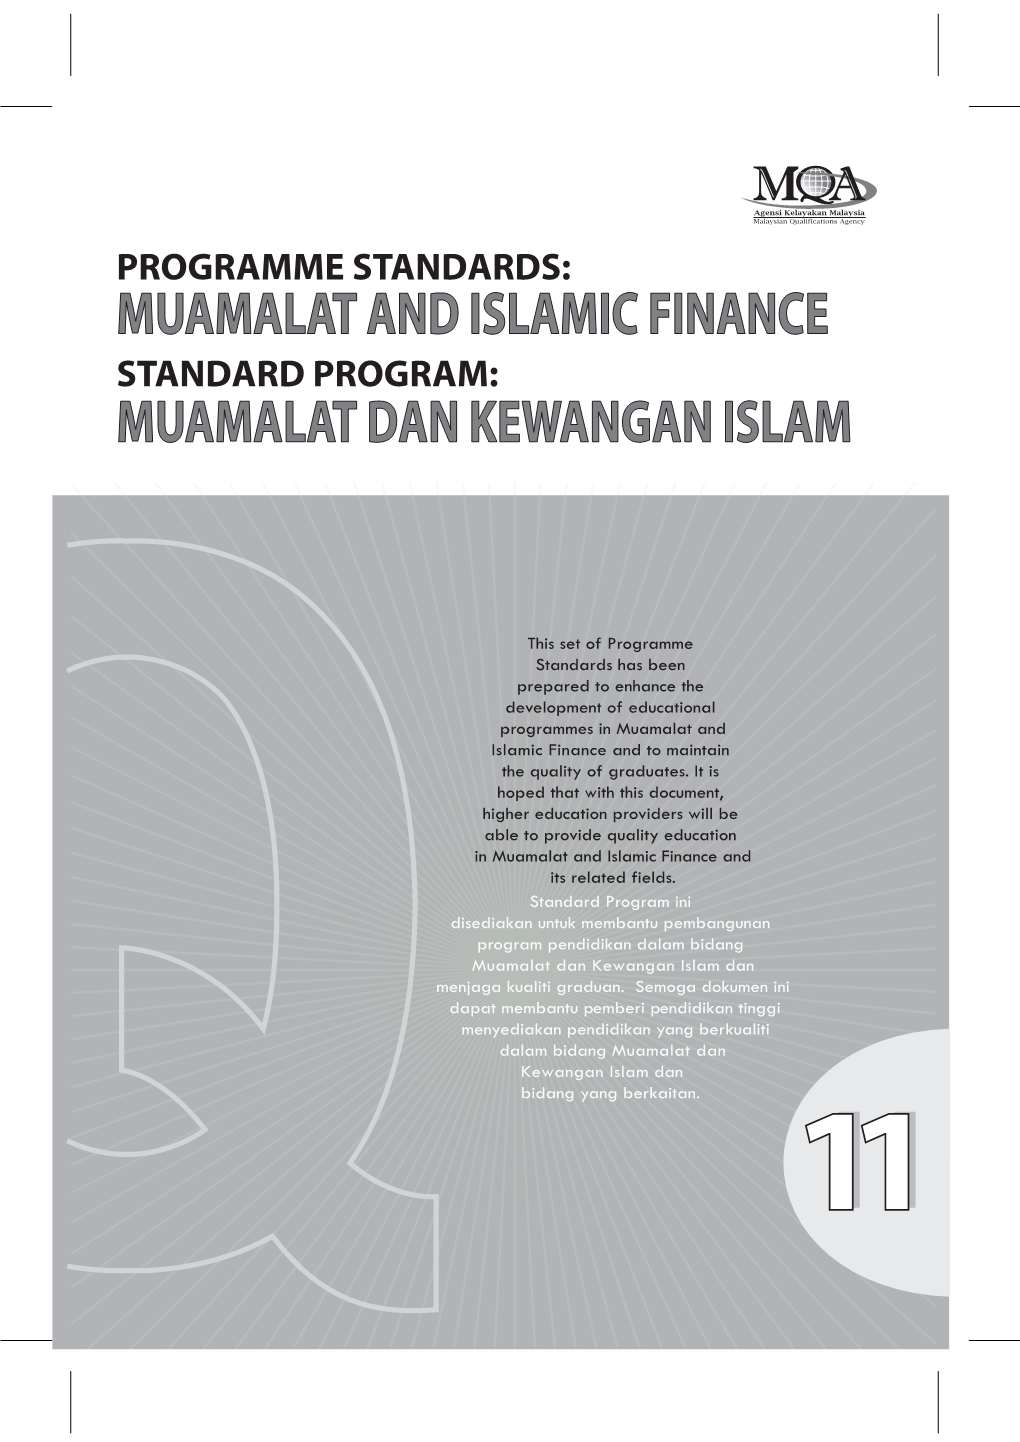 PROGRAMME STANDARDS: MUAMALAT & ISLAMIC FINANCE (Mif)